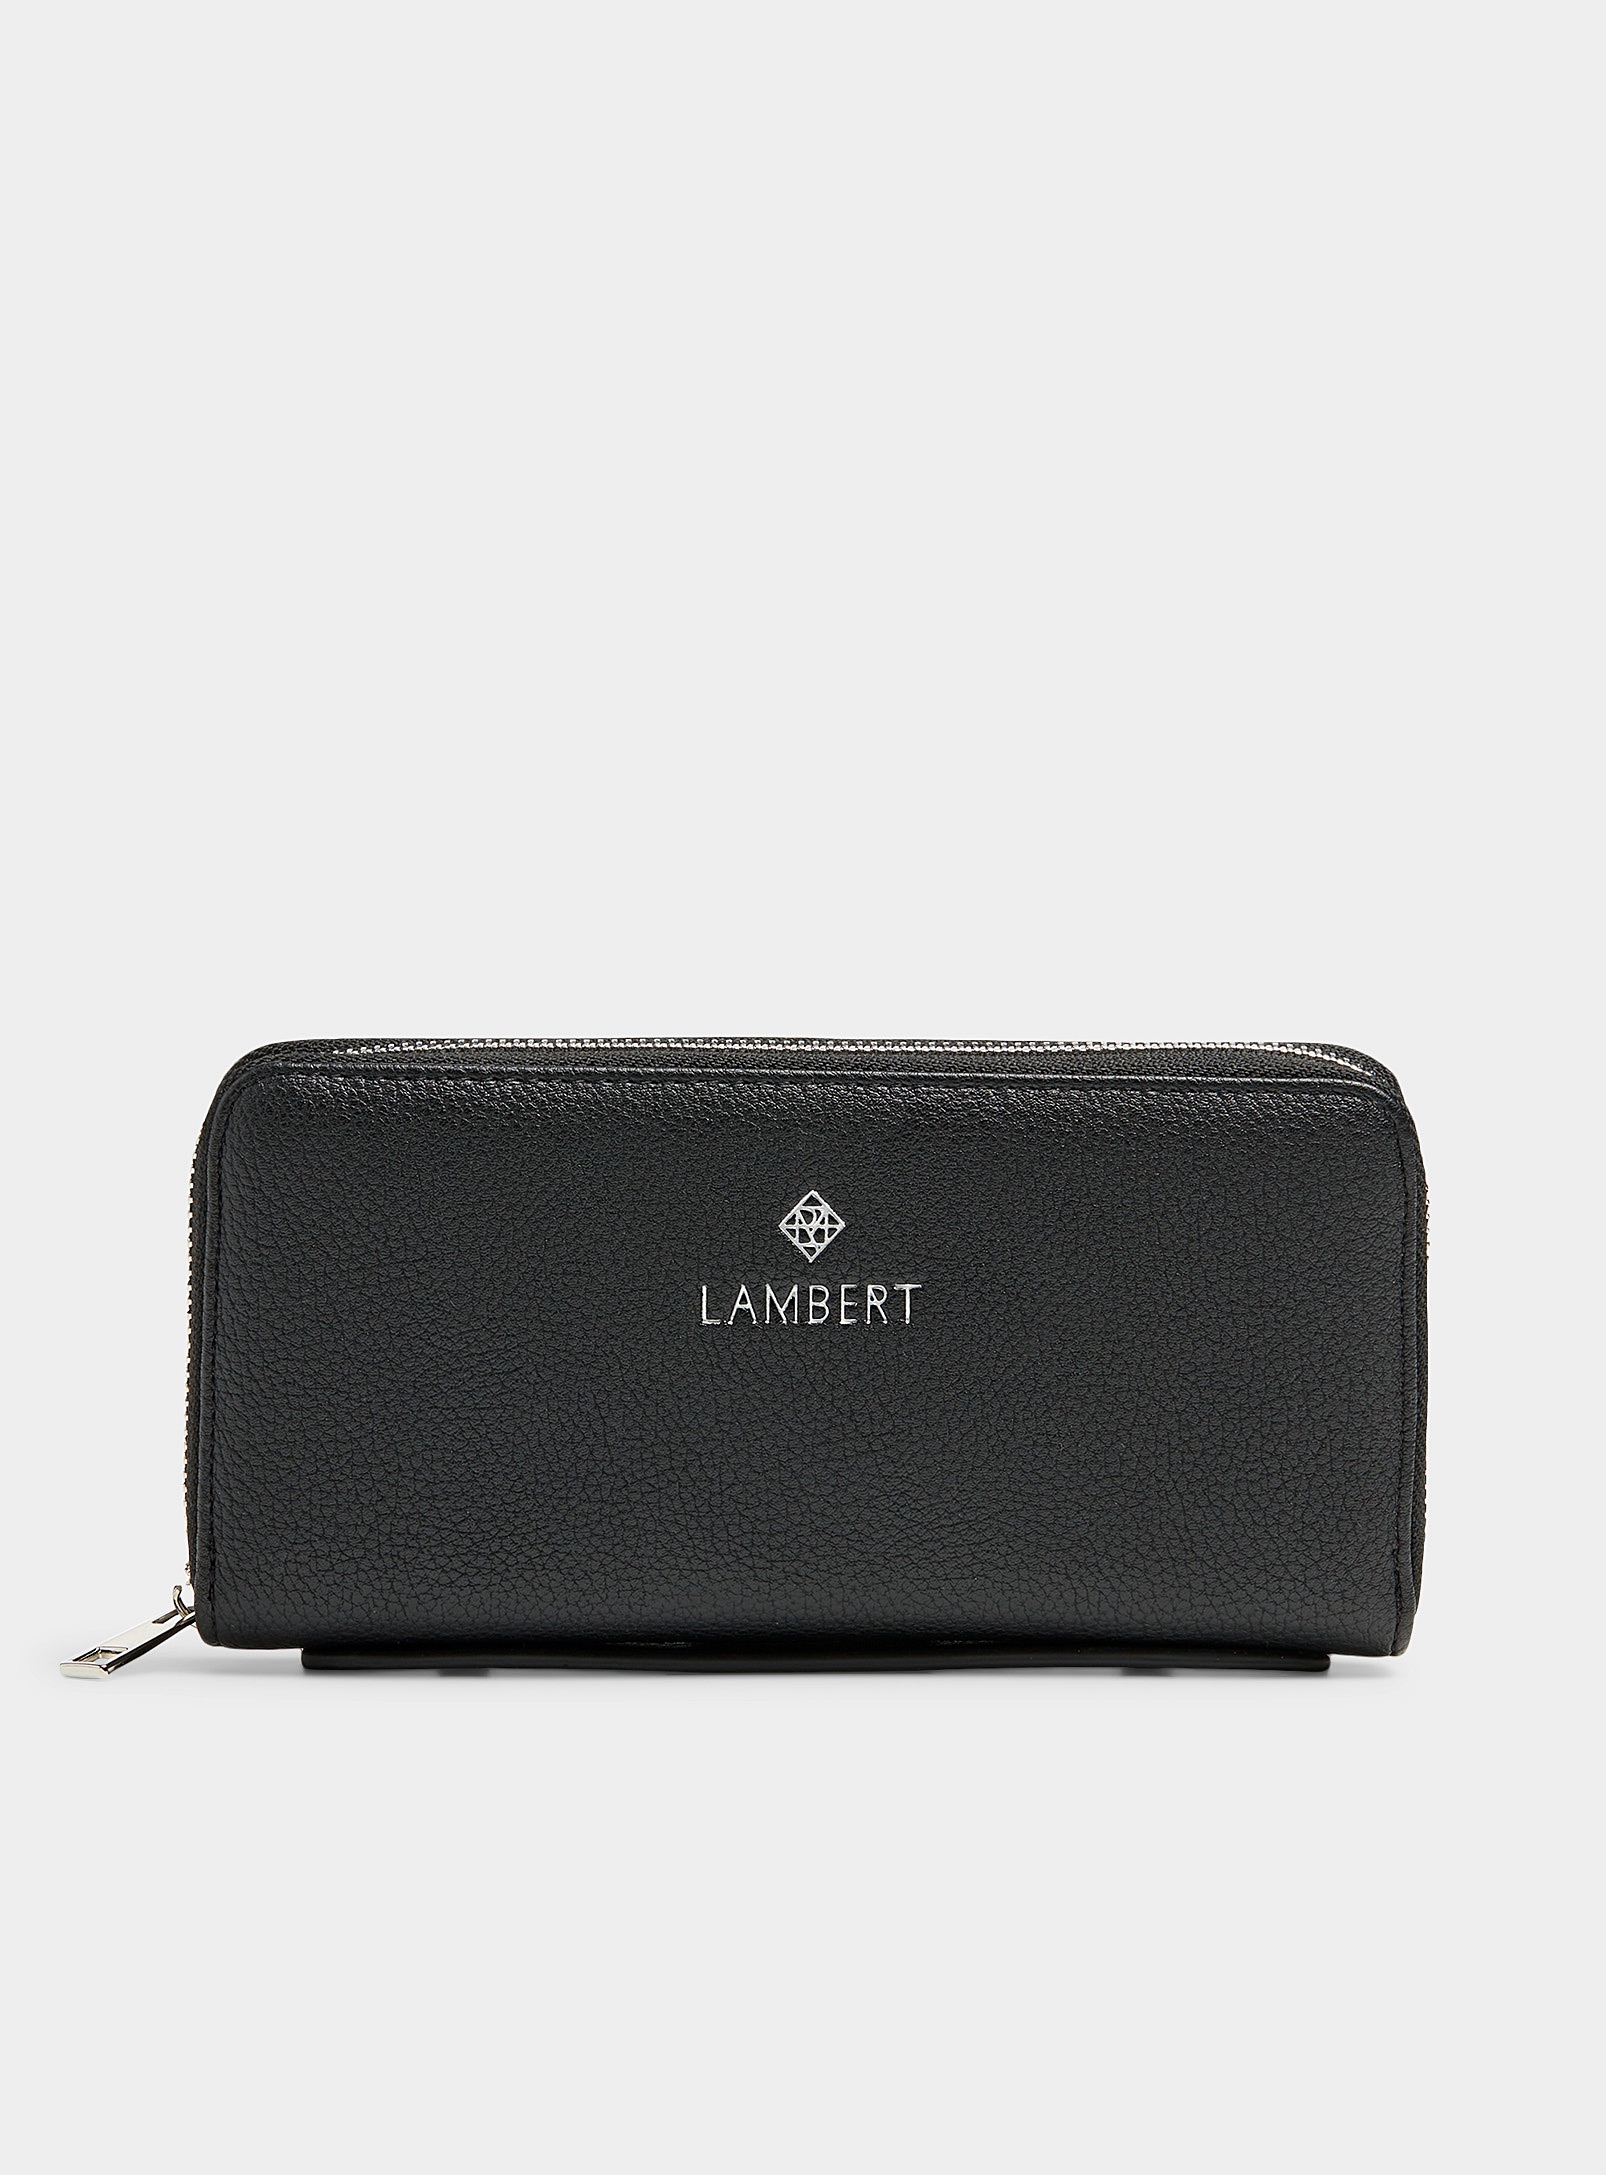 Lambert Meli Zip Wallet In Black